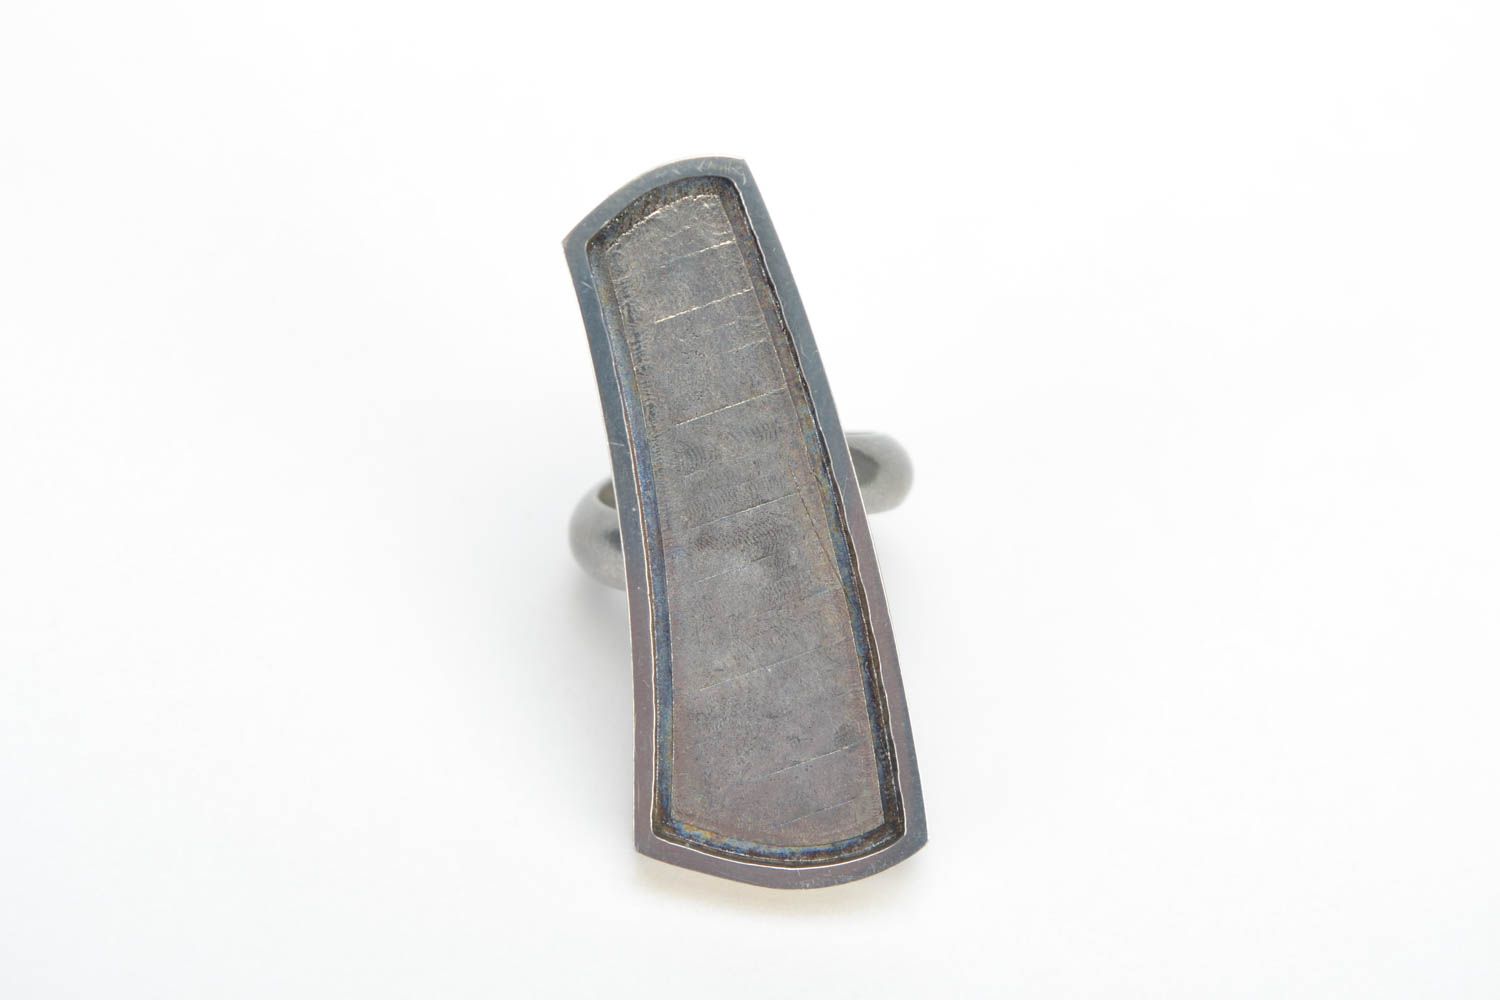 Schmuck Ring Rohling aus Metall ungewöhnlich künstlerisch handgemacht schön toll foto 1